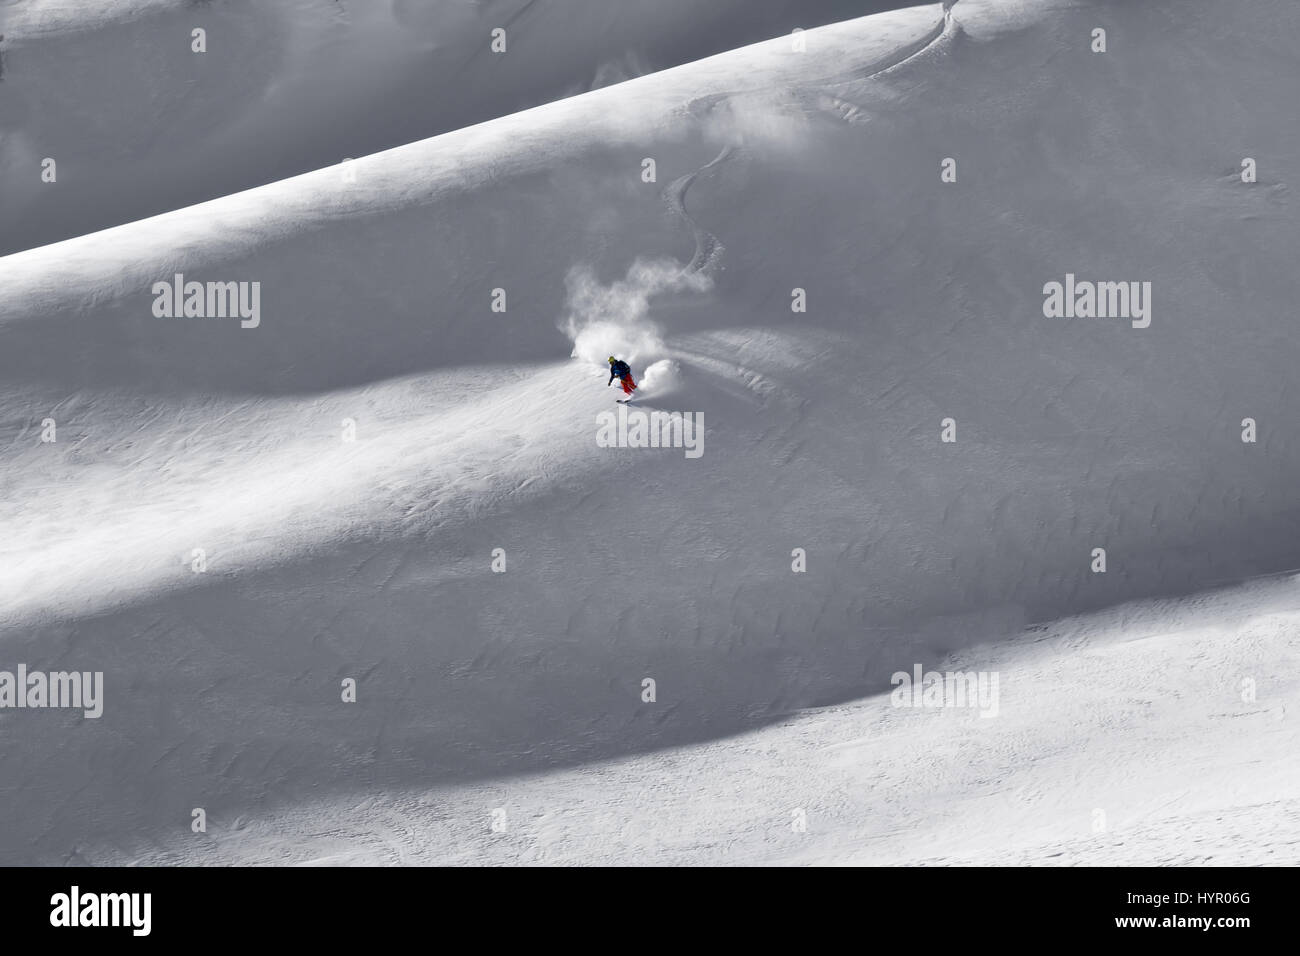 Courmayeur, Italia - 16 de enero de 2017: primeras pistas frescas, presentadas por el único esquiador solitario bajando de la montaña y pulverizando nuevos caído nieve en giros Foto de stock